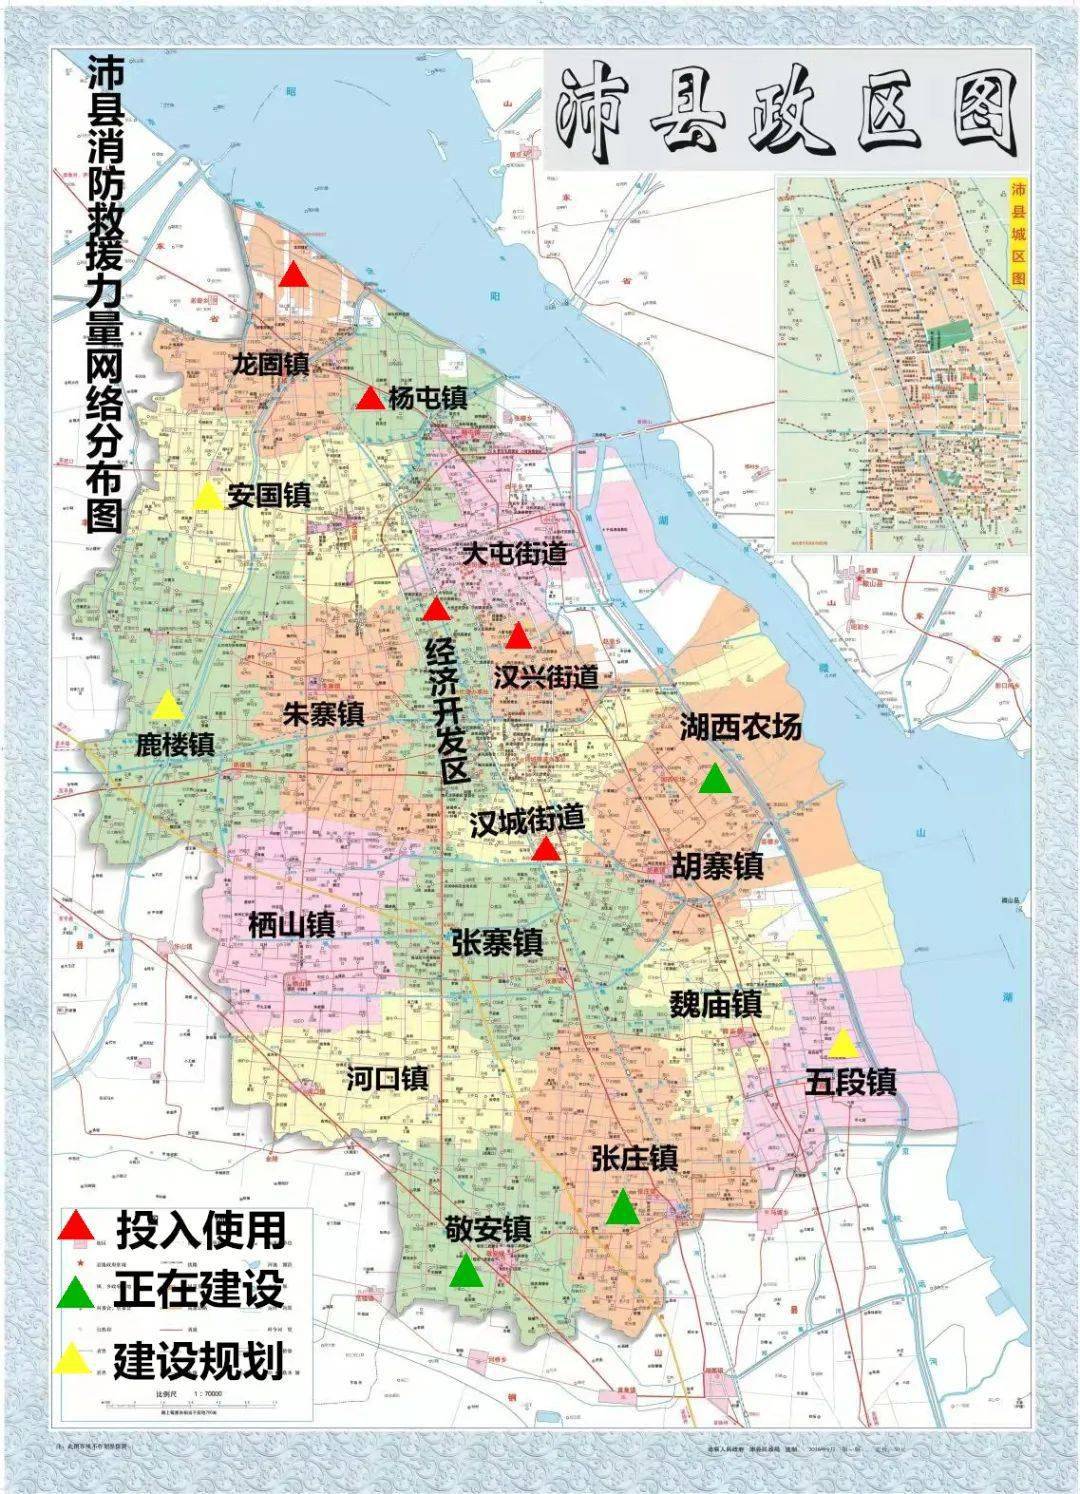 沛县河口镇规划网站建设